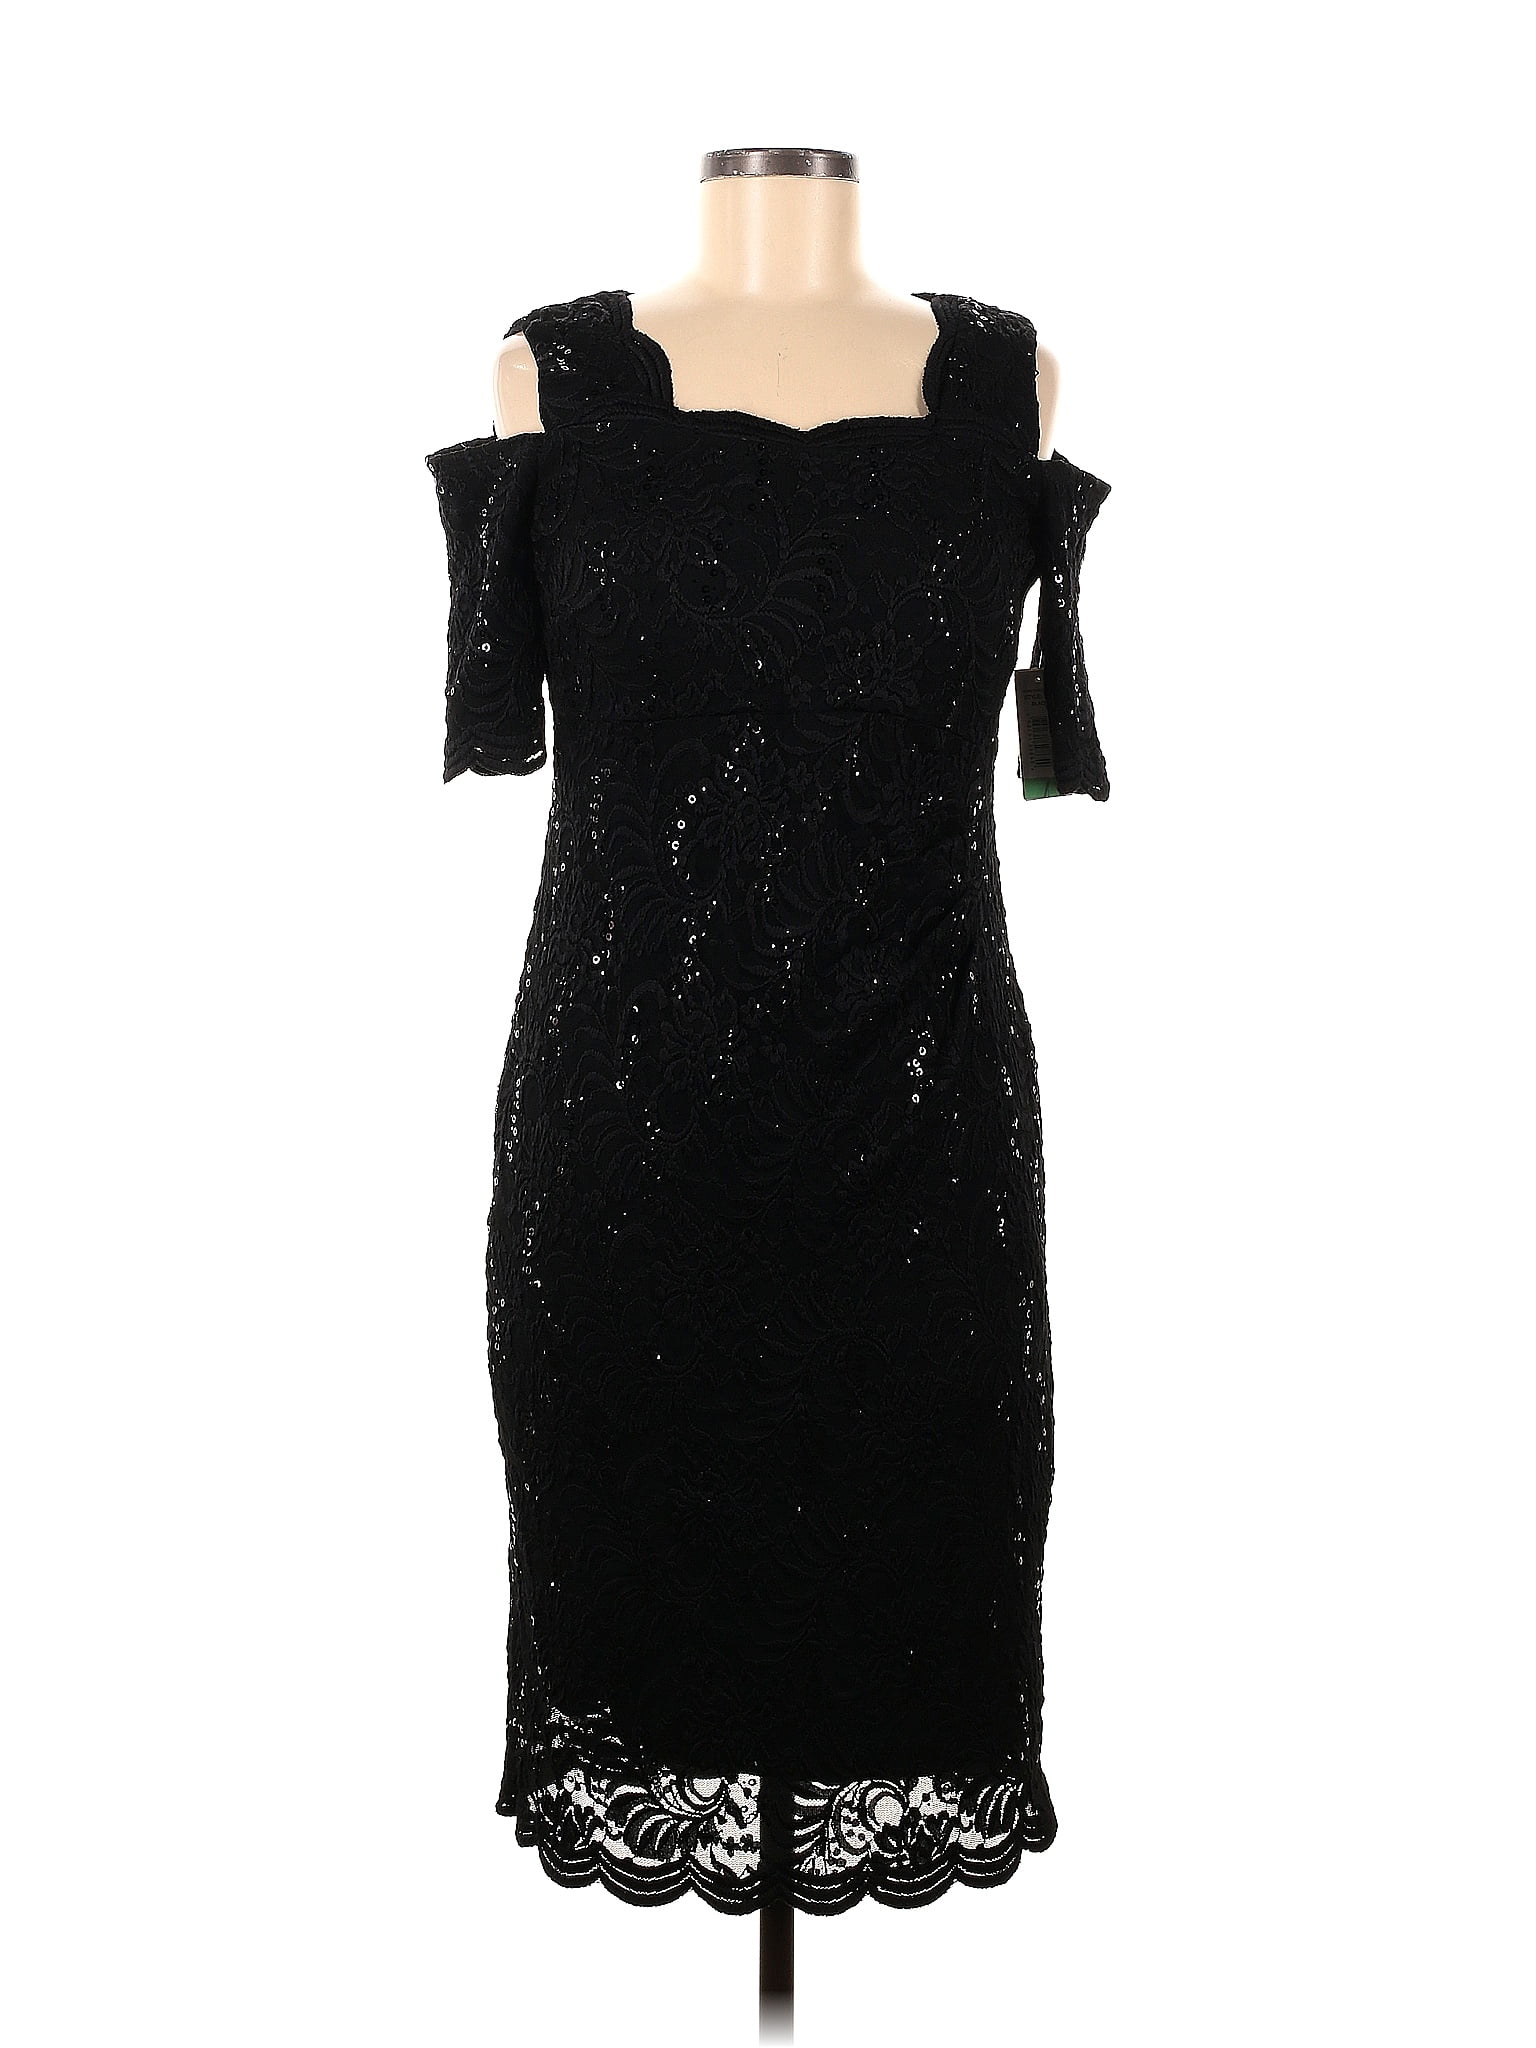 R&M Richards Solid Black Cocktail Dress Size 8 - 80% off | thredUP